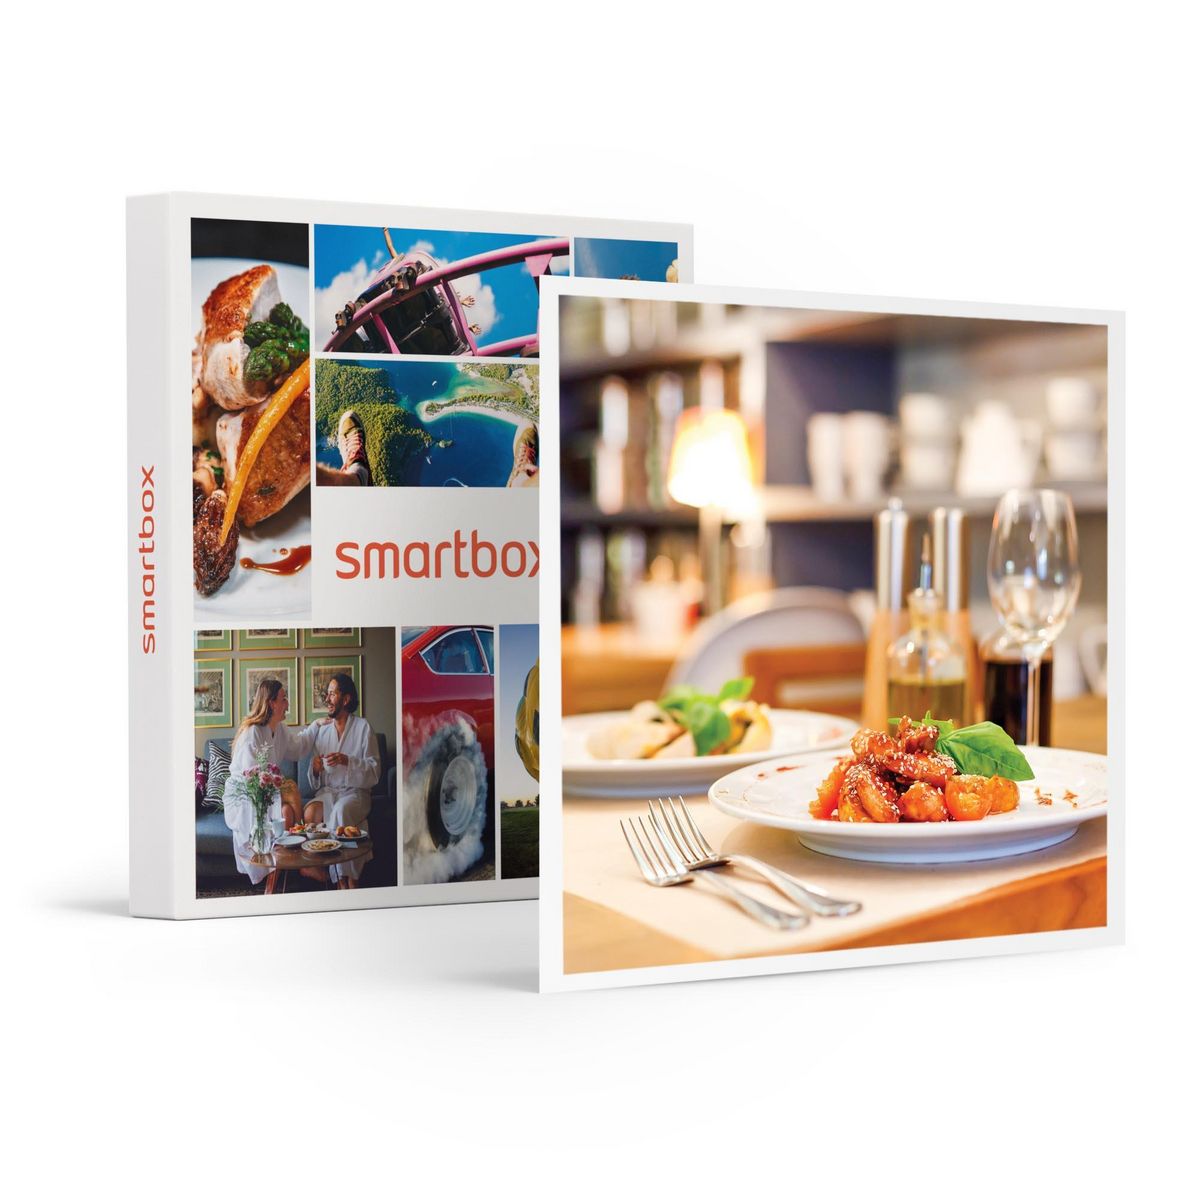 Smartbox 1 dîner en duo avec 3 plats et boissons comprises - Coffret Cadeau Gastronomie